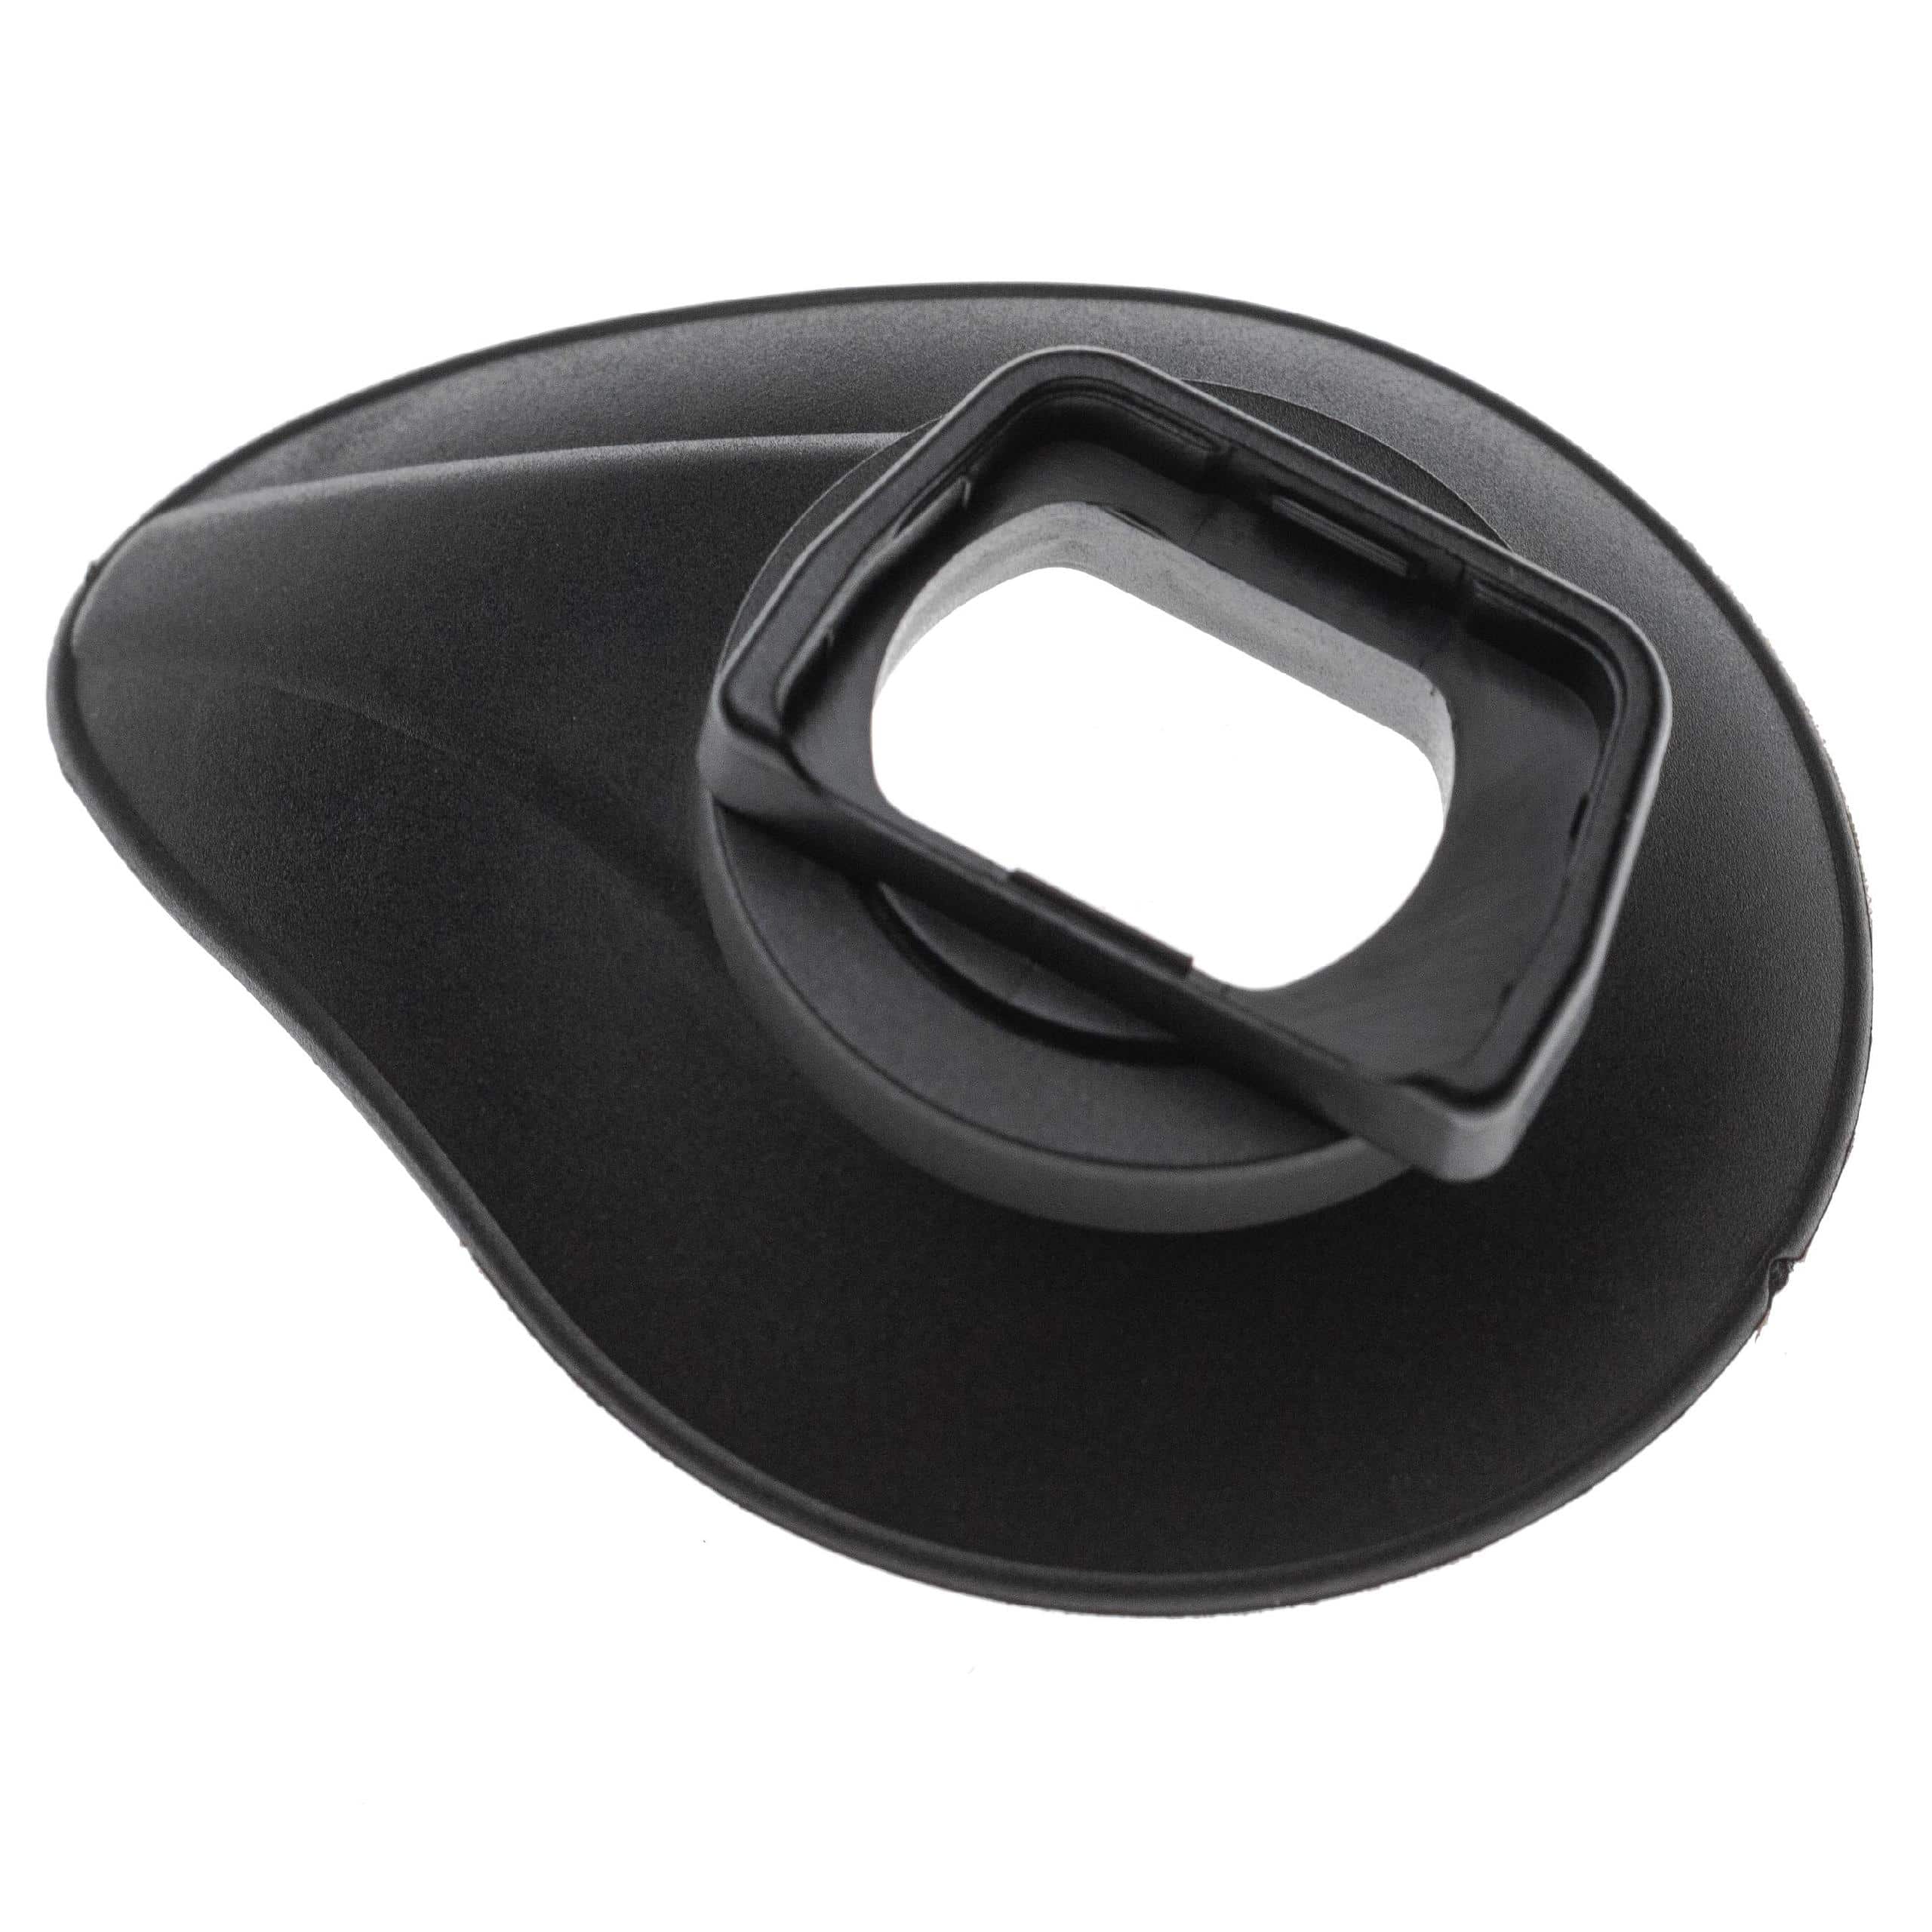 Augenmuschel Sucher als Ersatz für Sony FDA-EP10 für Sony A6000 u.a., Kunststoff, Gummi